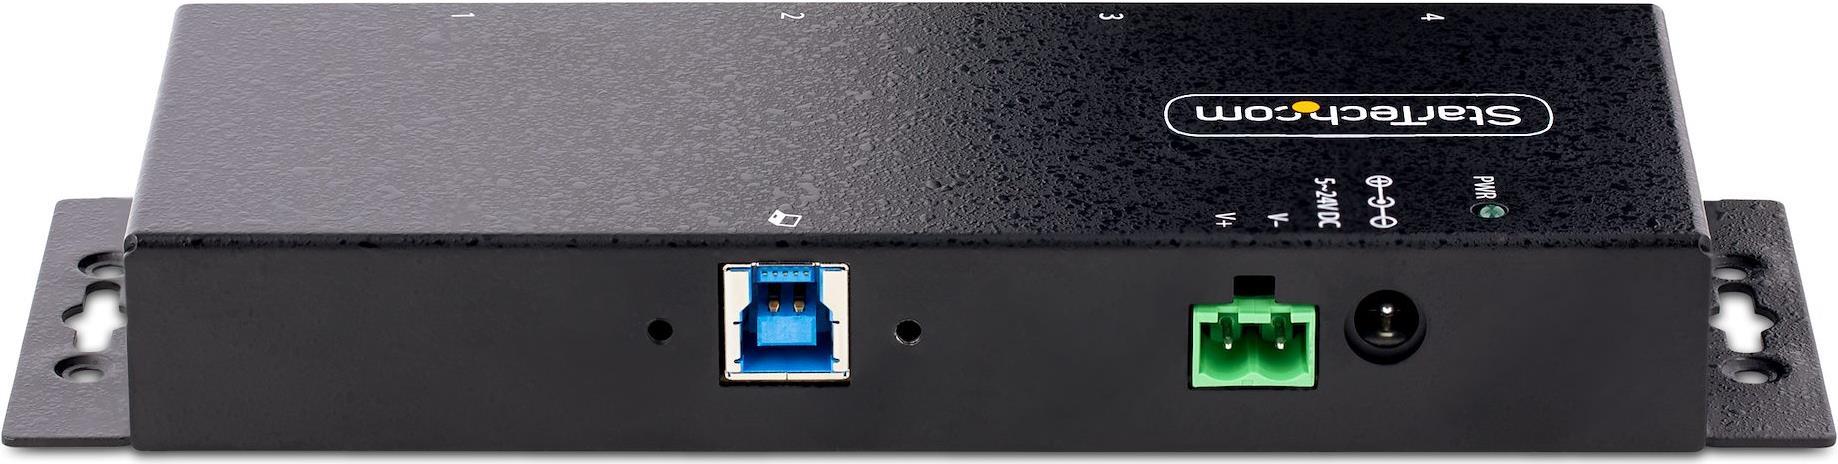 StarTech.com 4-Port USB 3.0 Hub mit 5 Gbit/s (5G4AINDNP-USB-A-HUB)